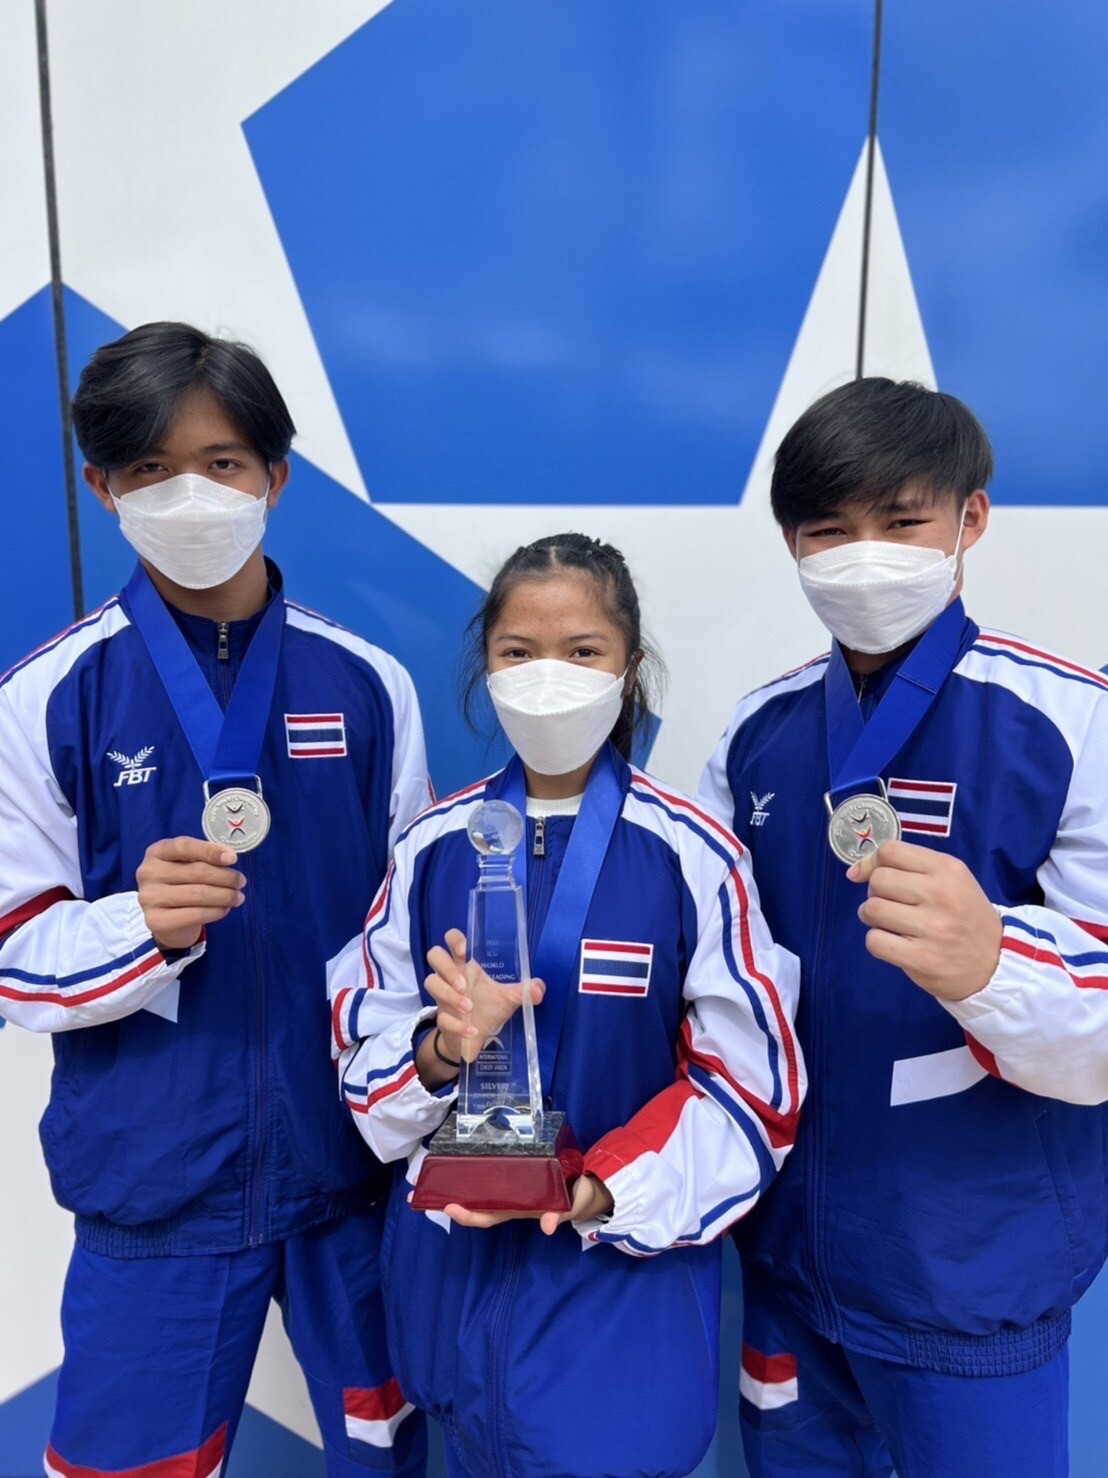 ม.หอการค้าไทย แสดงความยินดีกับนักศึกษาที่ได้รับรางวัล